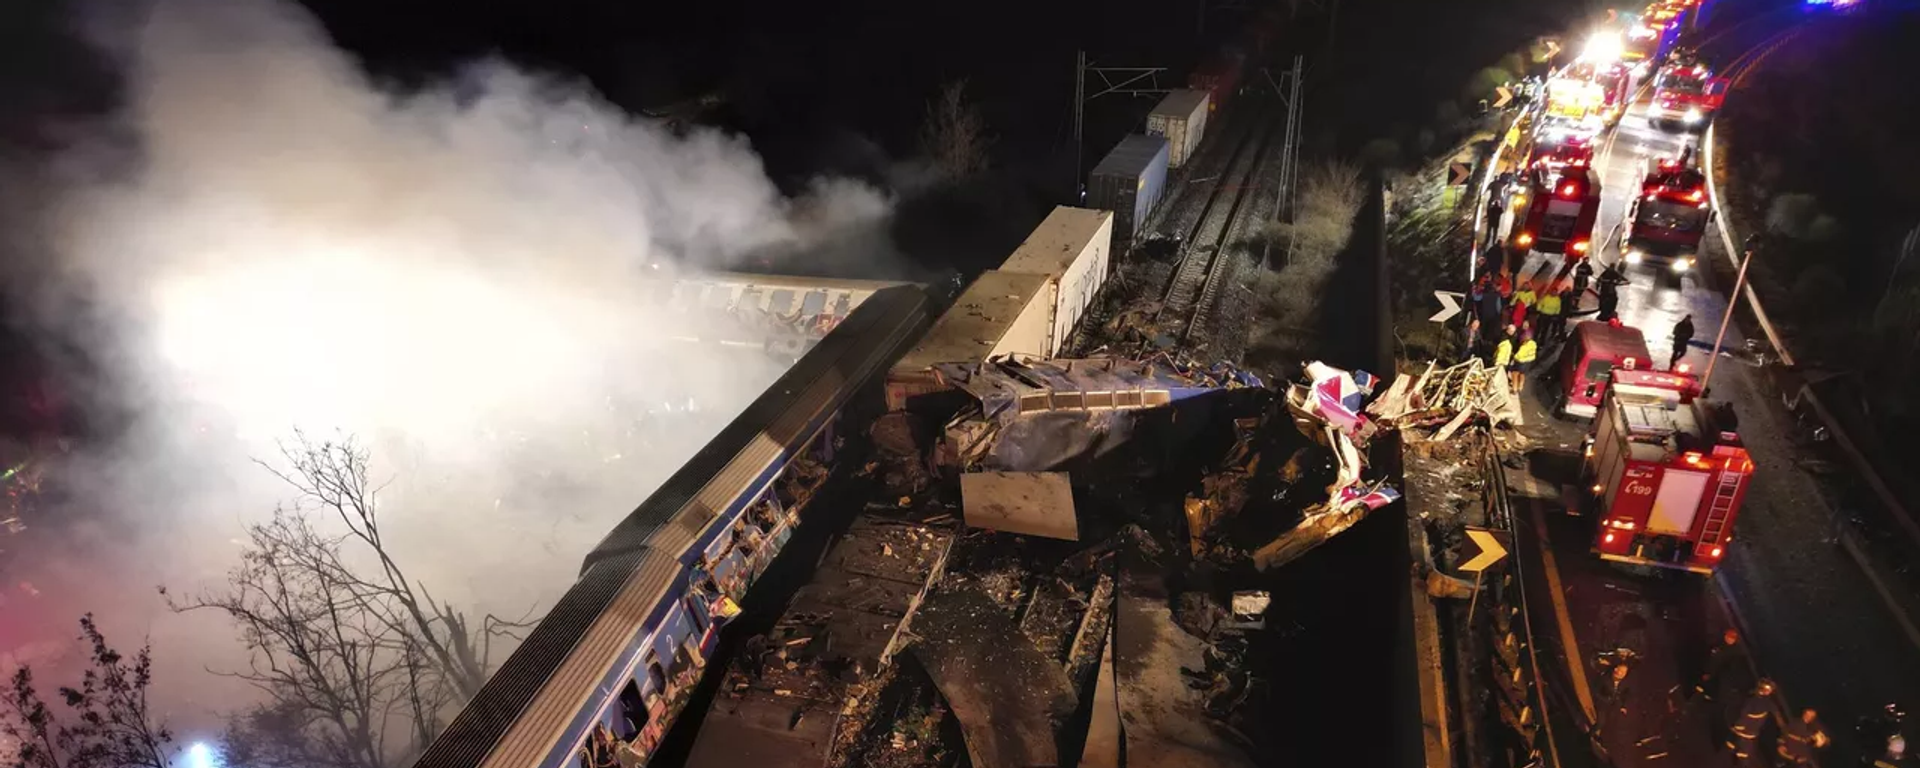 Yunanistan'ın Larissa kentinde iki tren çarpıştı. Söz konusu kazada ilk belirlemelere göre 16 kişi hayatını kaybetti, 85 kişi de yaralandı. - Sputnik Türkiye, 1920, 01.03.2023